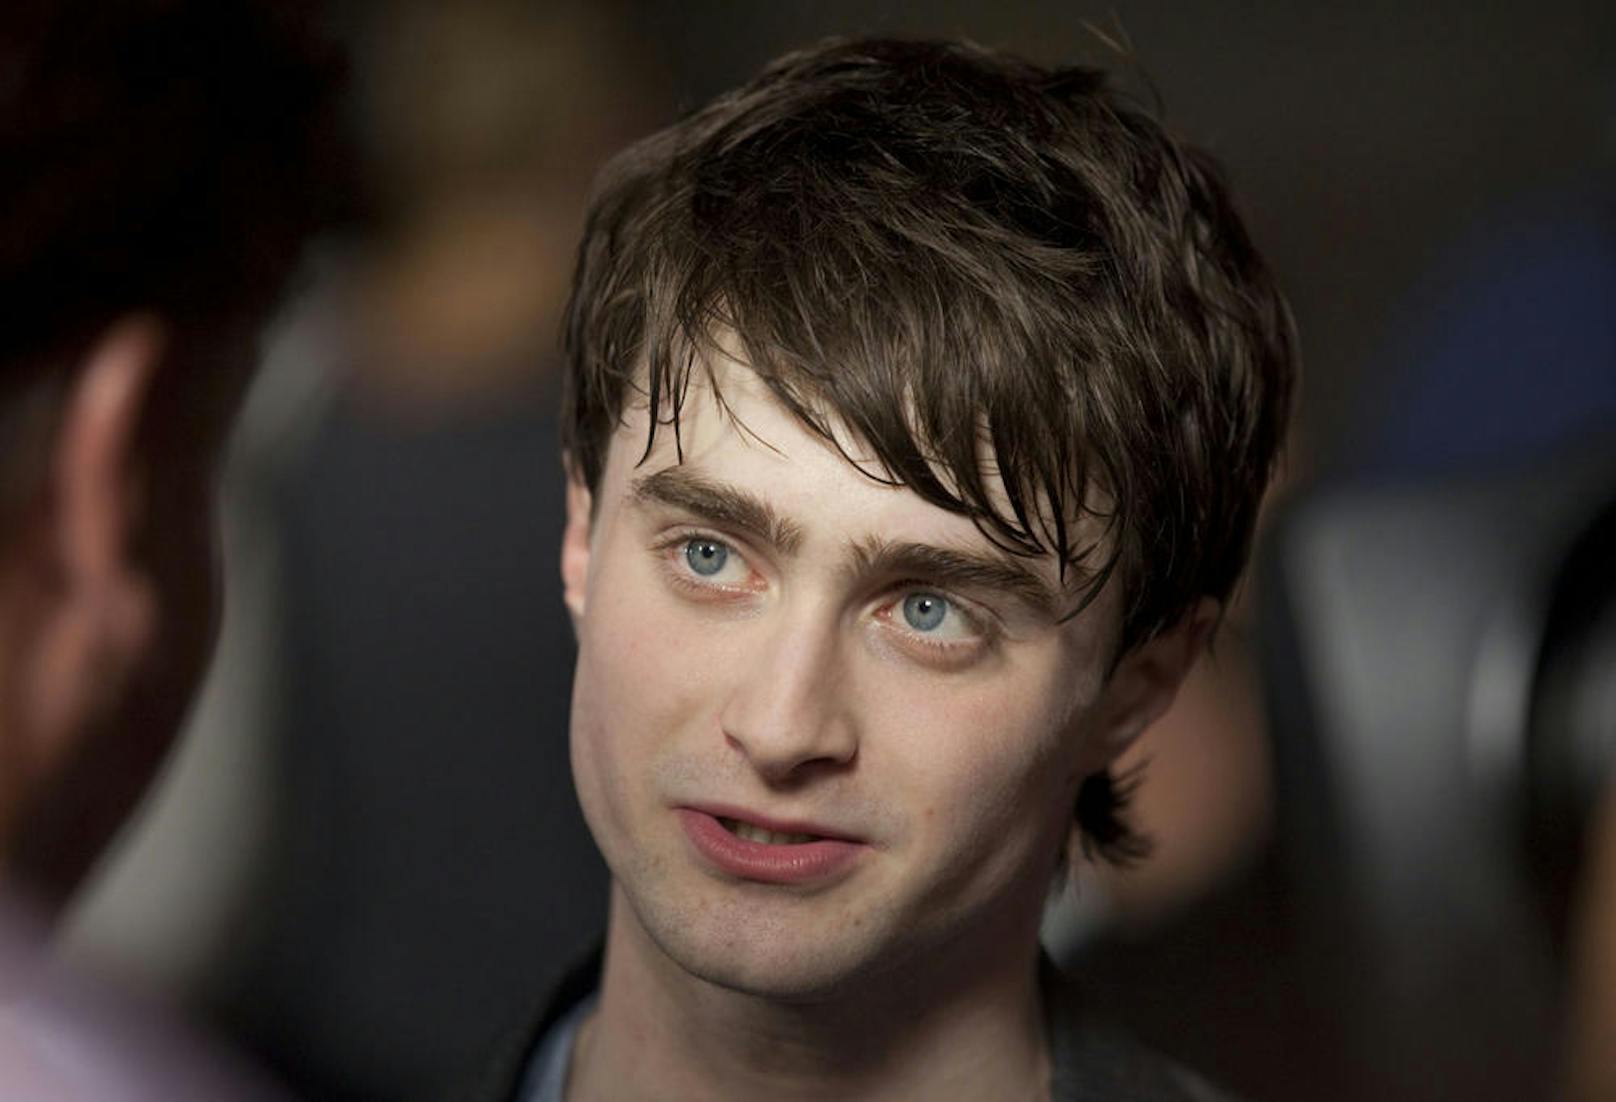 Einen Monat nach den Dreharbeiten für den letzten "Harry Potter"-Film gab <b>Daniel Radcliffe</b> (29) das Trinken auf. Gegenüber dem "Telegraph" gab er 2016 zu, dass sein Umgang mit Alkohol außer Kontrolle geraten war: "Der Alkohol hat mich verändert. Ich war betrunken eine andere Person." Heute sei er trocken und denke selten ans Trinken.